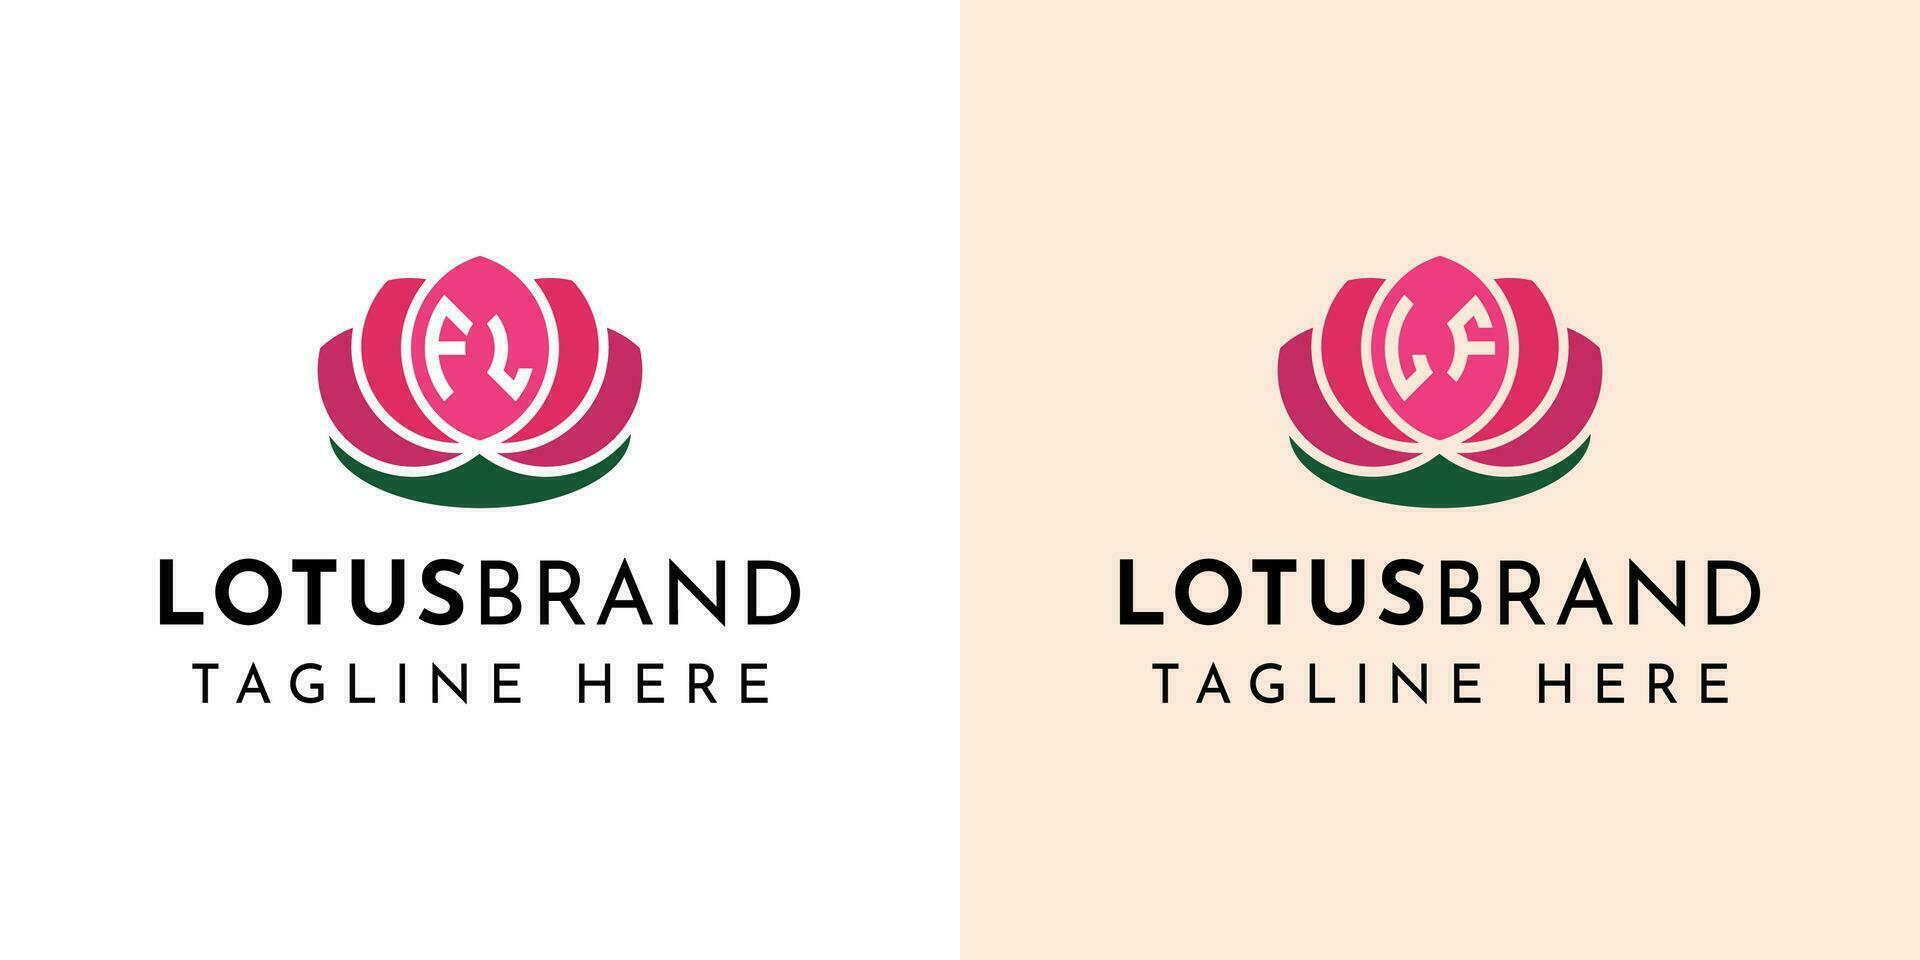 carta fl e se lótus logotipo definir, adequado para o negócio relacionado para lótus flores com fl ou se iniciais. vetor